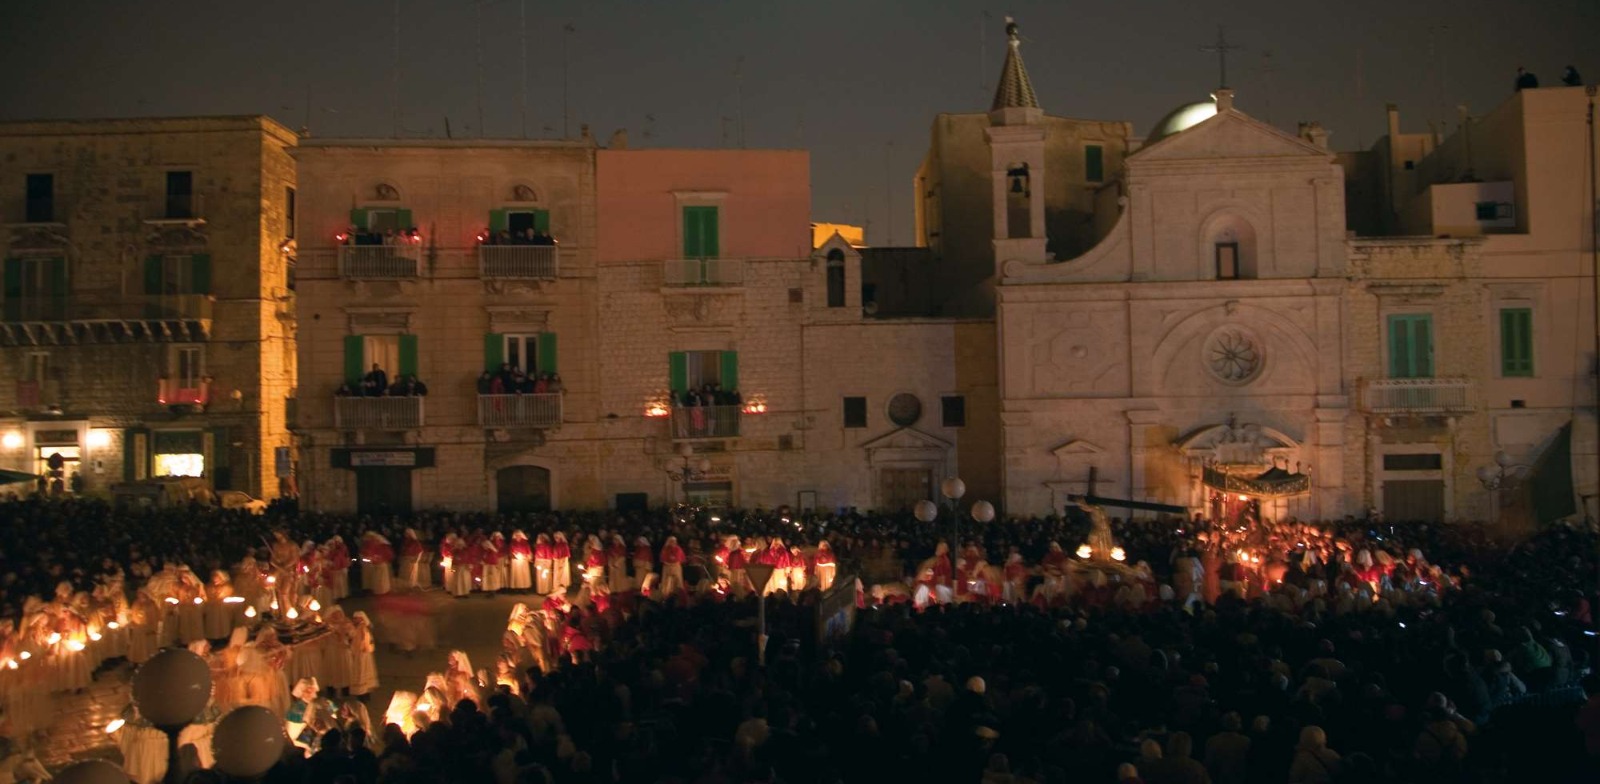 Holy week 2022 in Apulia region